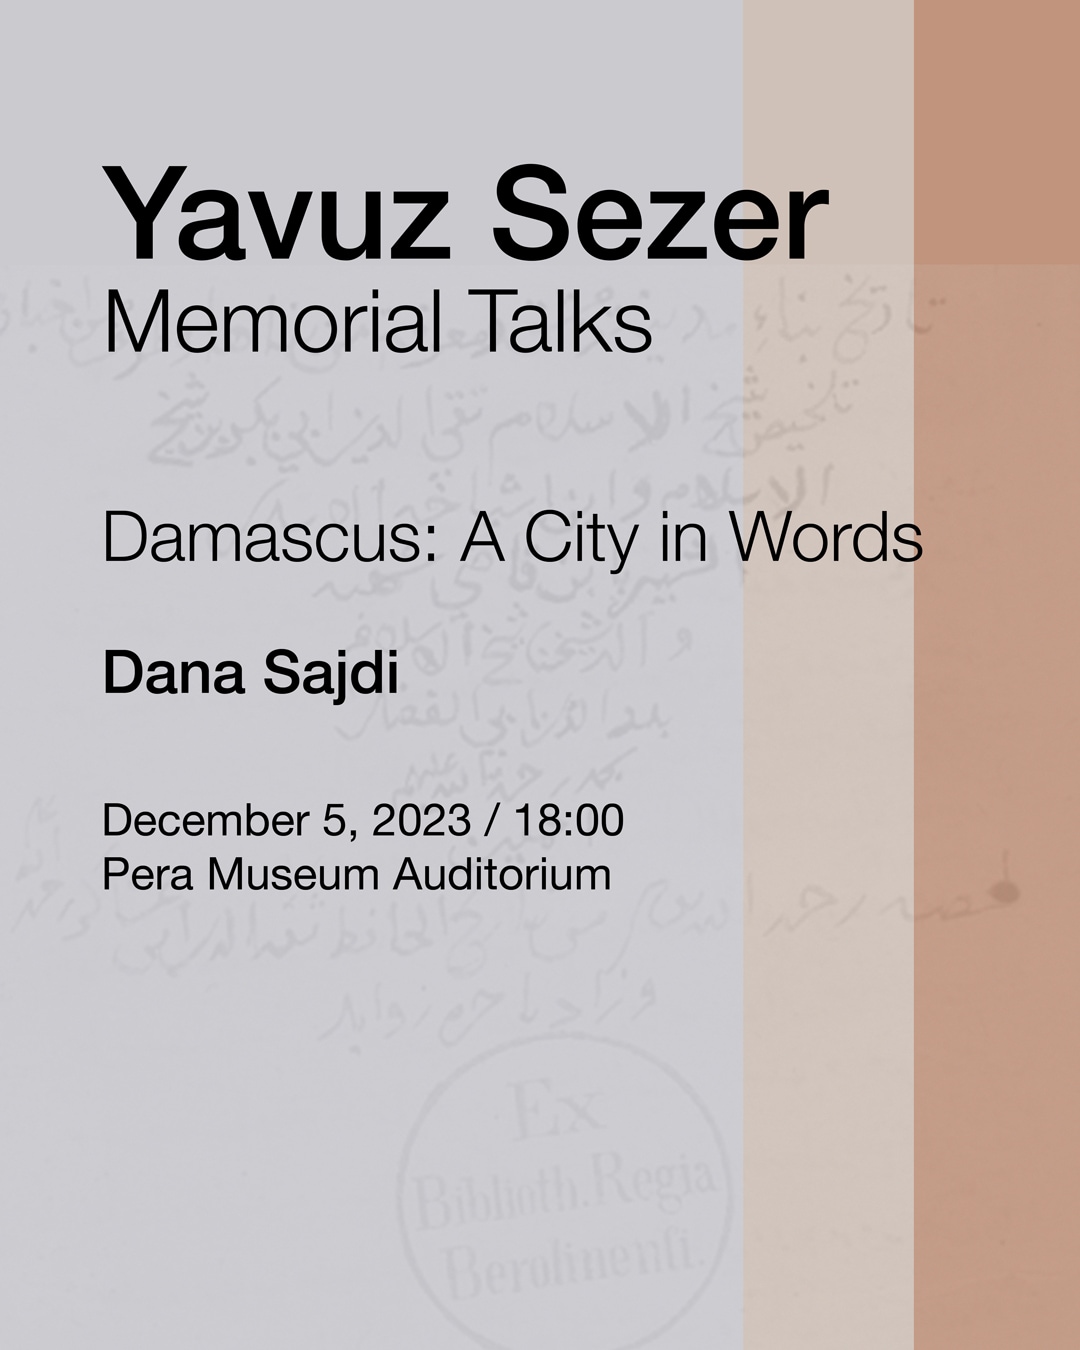 Yavuz Sezer Memorial Talks